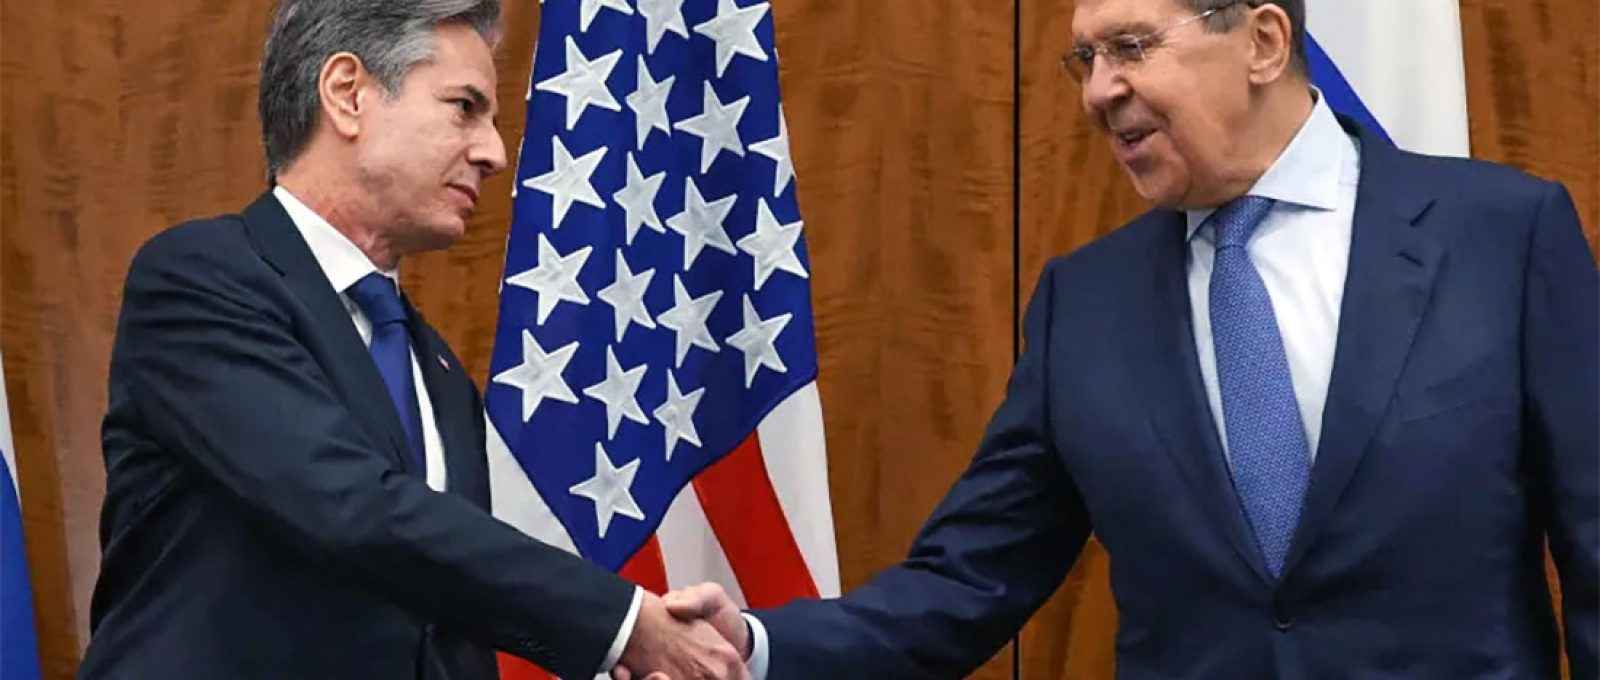 O secretário de Estado dos EUA, Antony Blinken (esq.), cumprimenta o ministro das Relações Exteriores da Rússia, Sergei Lavrov, pouco antes de reunião entre ambos em Genebra, em 21/01/2022 (Reuters/Ministério das Relações Exteriores da Rússia).